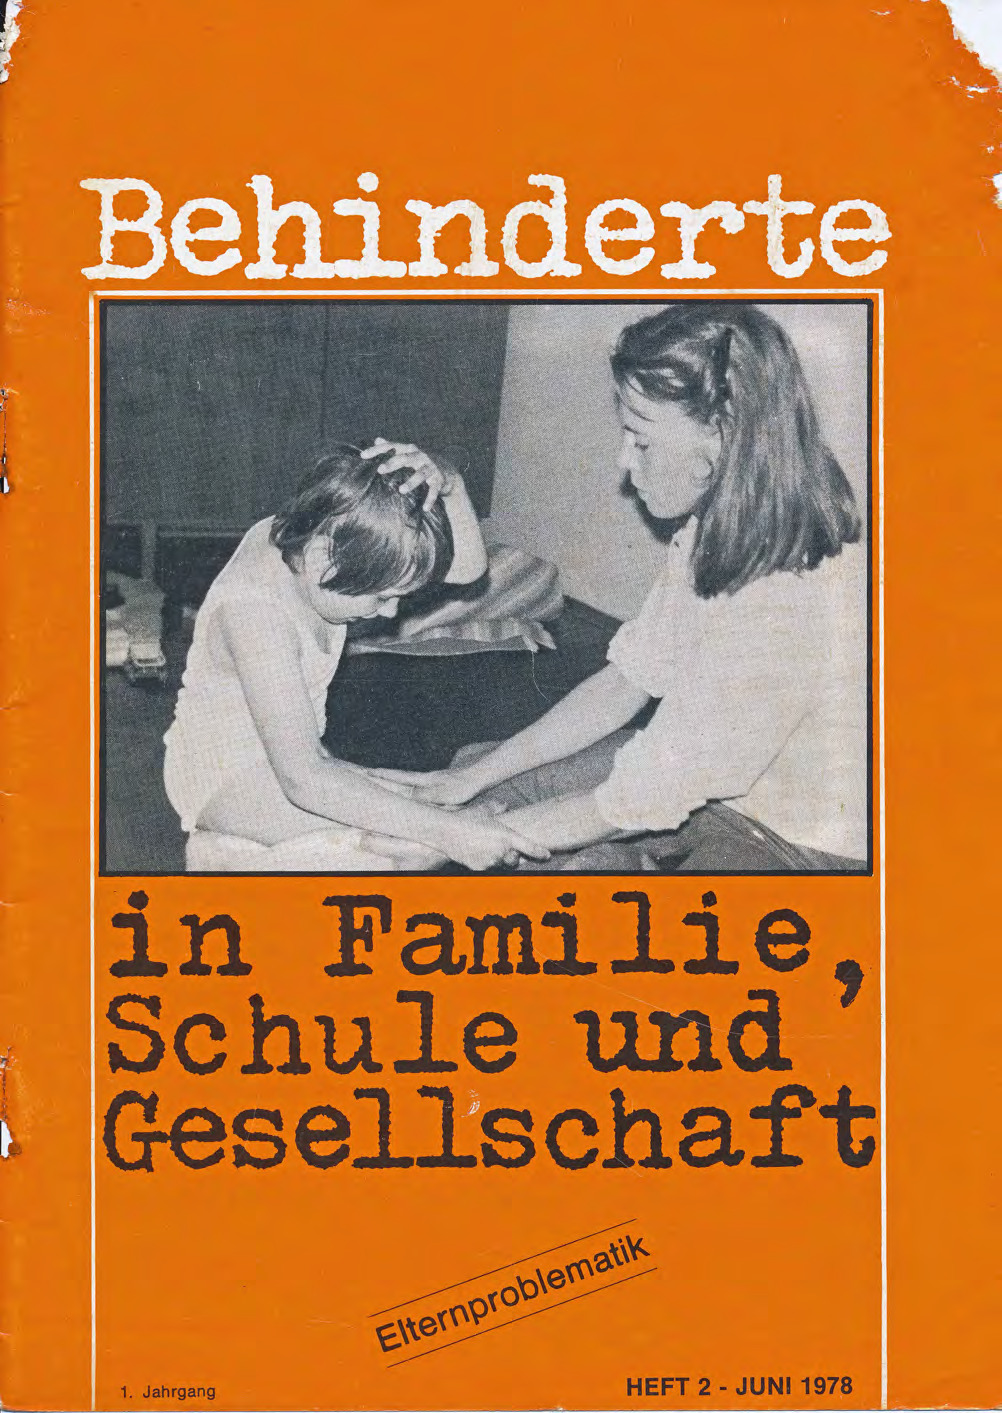 Titelbild der Zeitschrift BEHINDERTE MENSCHEN, Ausgabe 2/1978 "Elternproblematik"